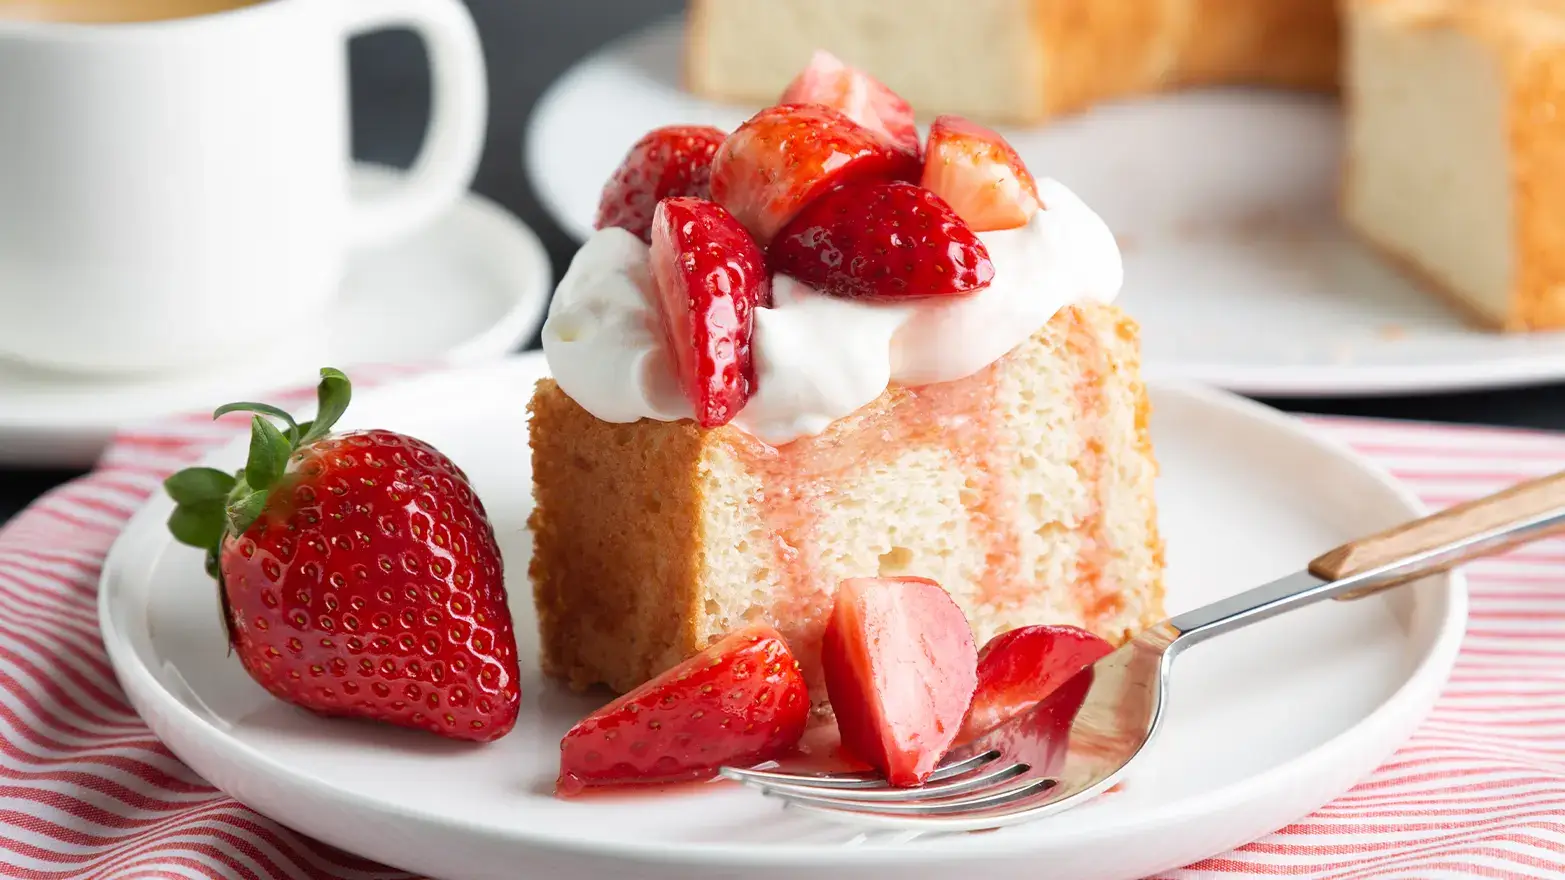 Warm strawberry shortcake for birthday dinner dessert